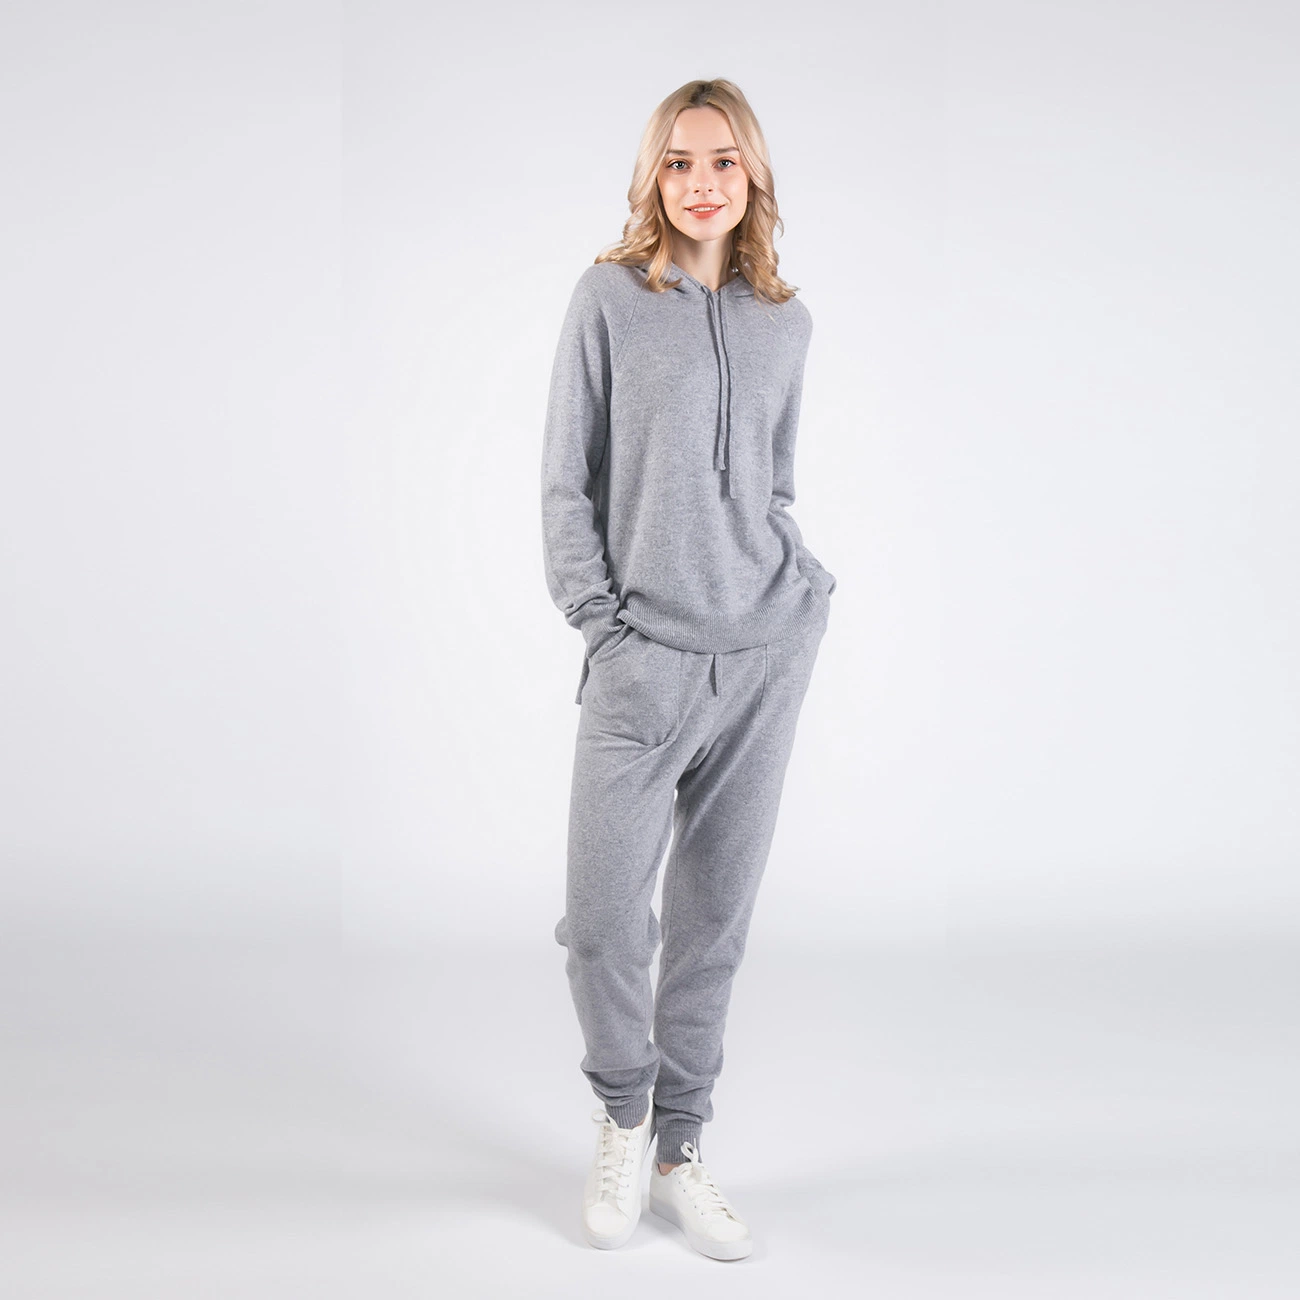 Pantalón deportivo y sudadera con capucha de cashmere′ S Luxe para mujer Suéter